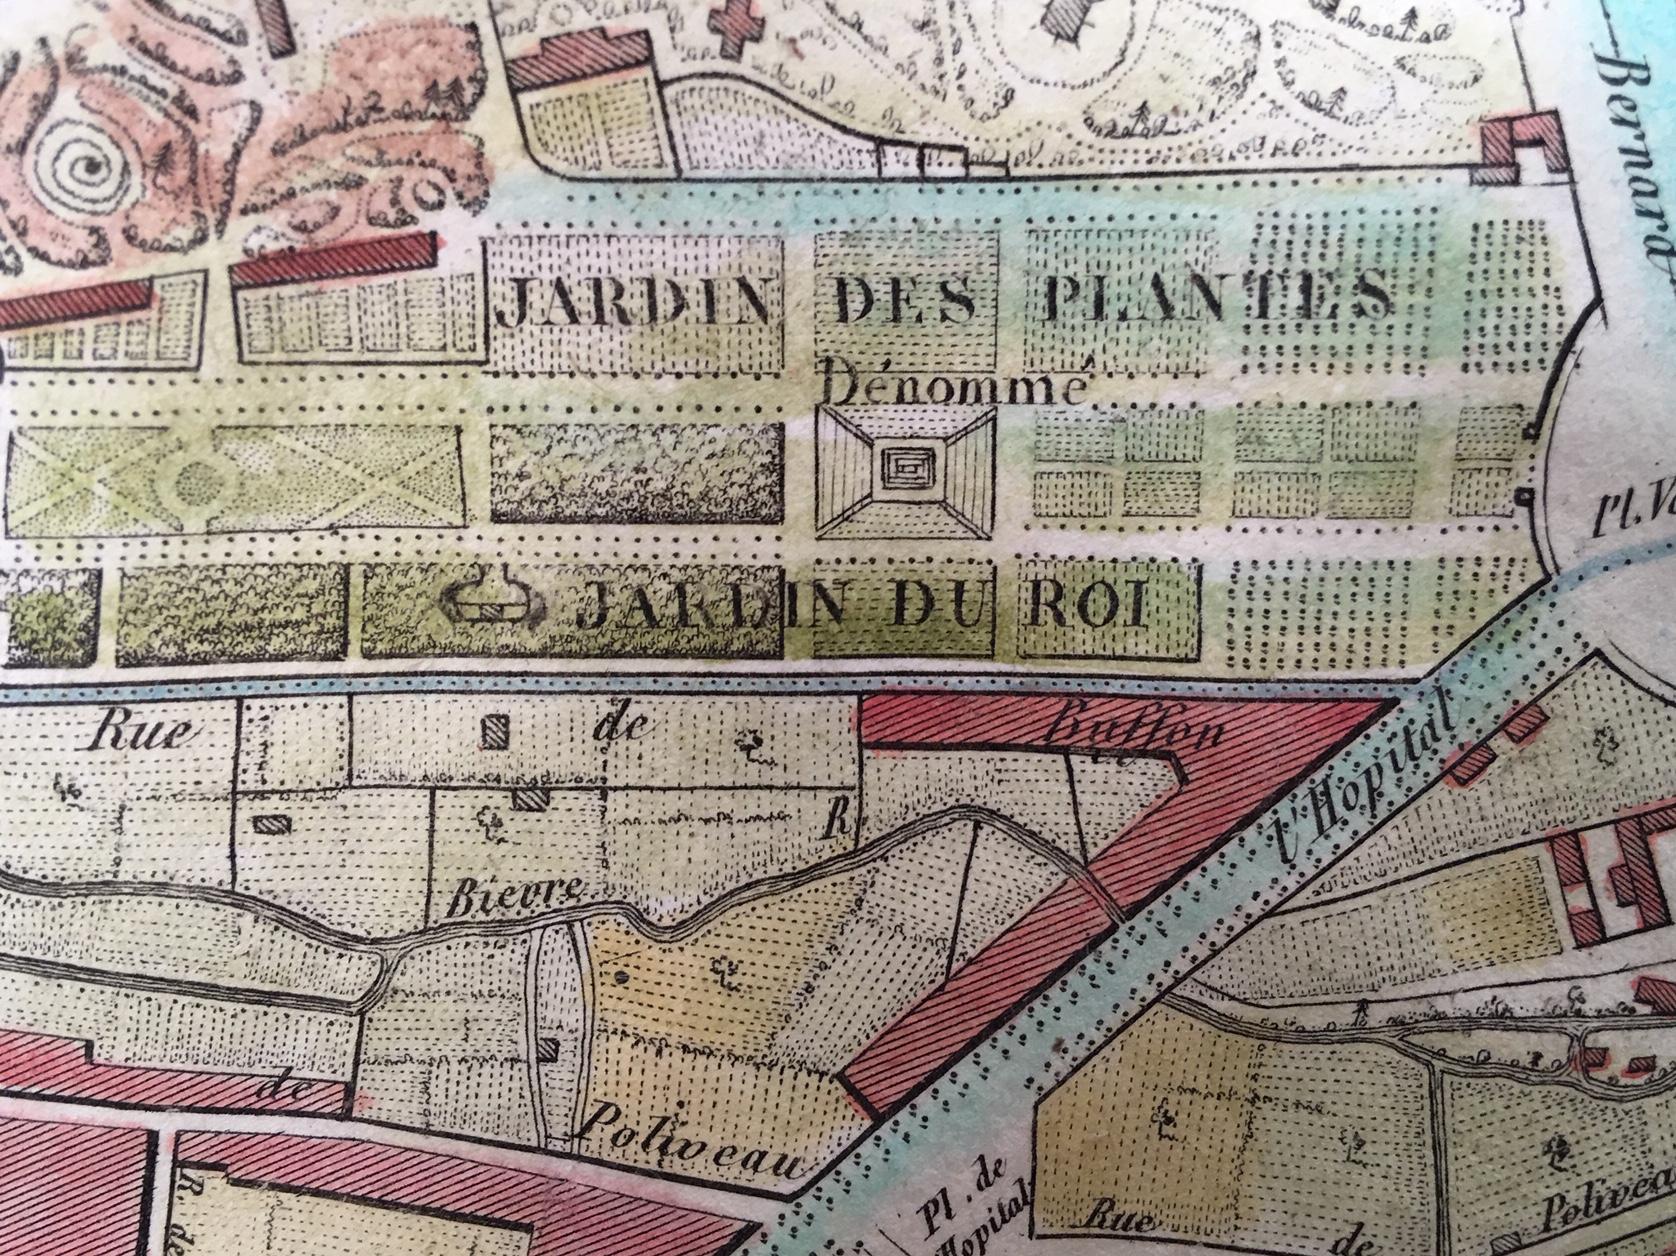 Plan de la Ville de Paris, 1816 - Realist Print by Unknown